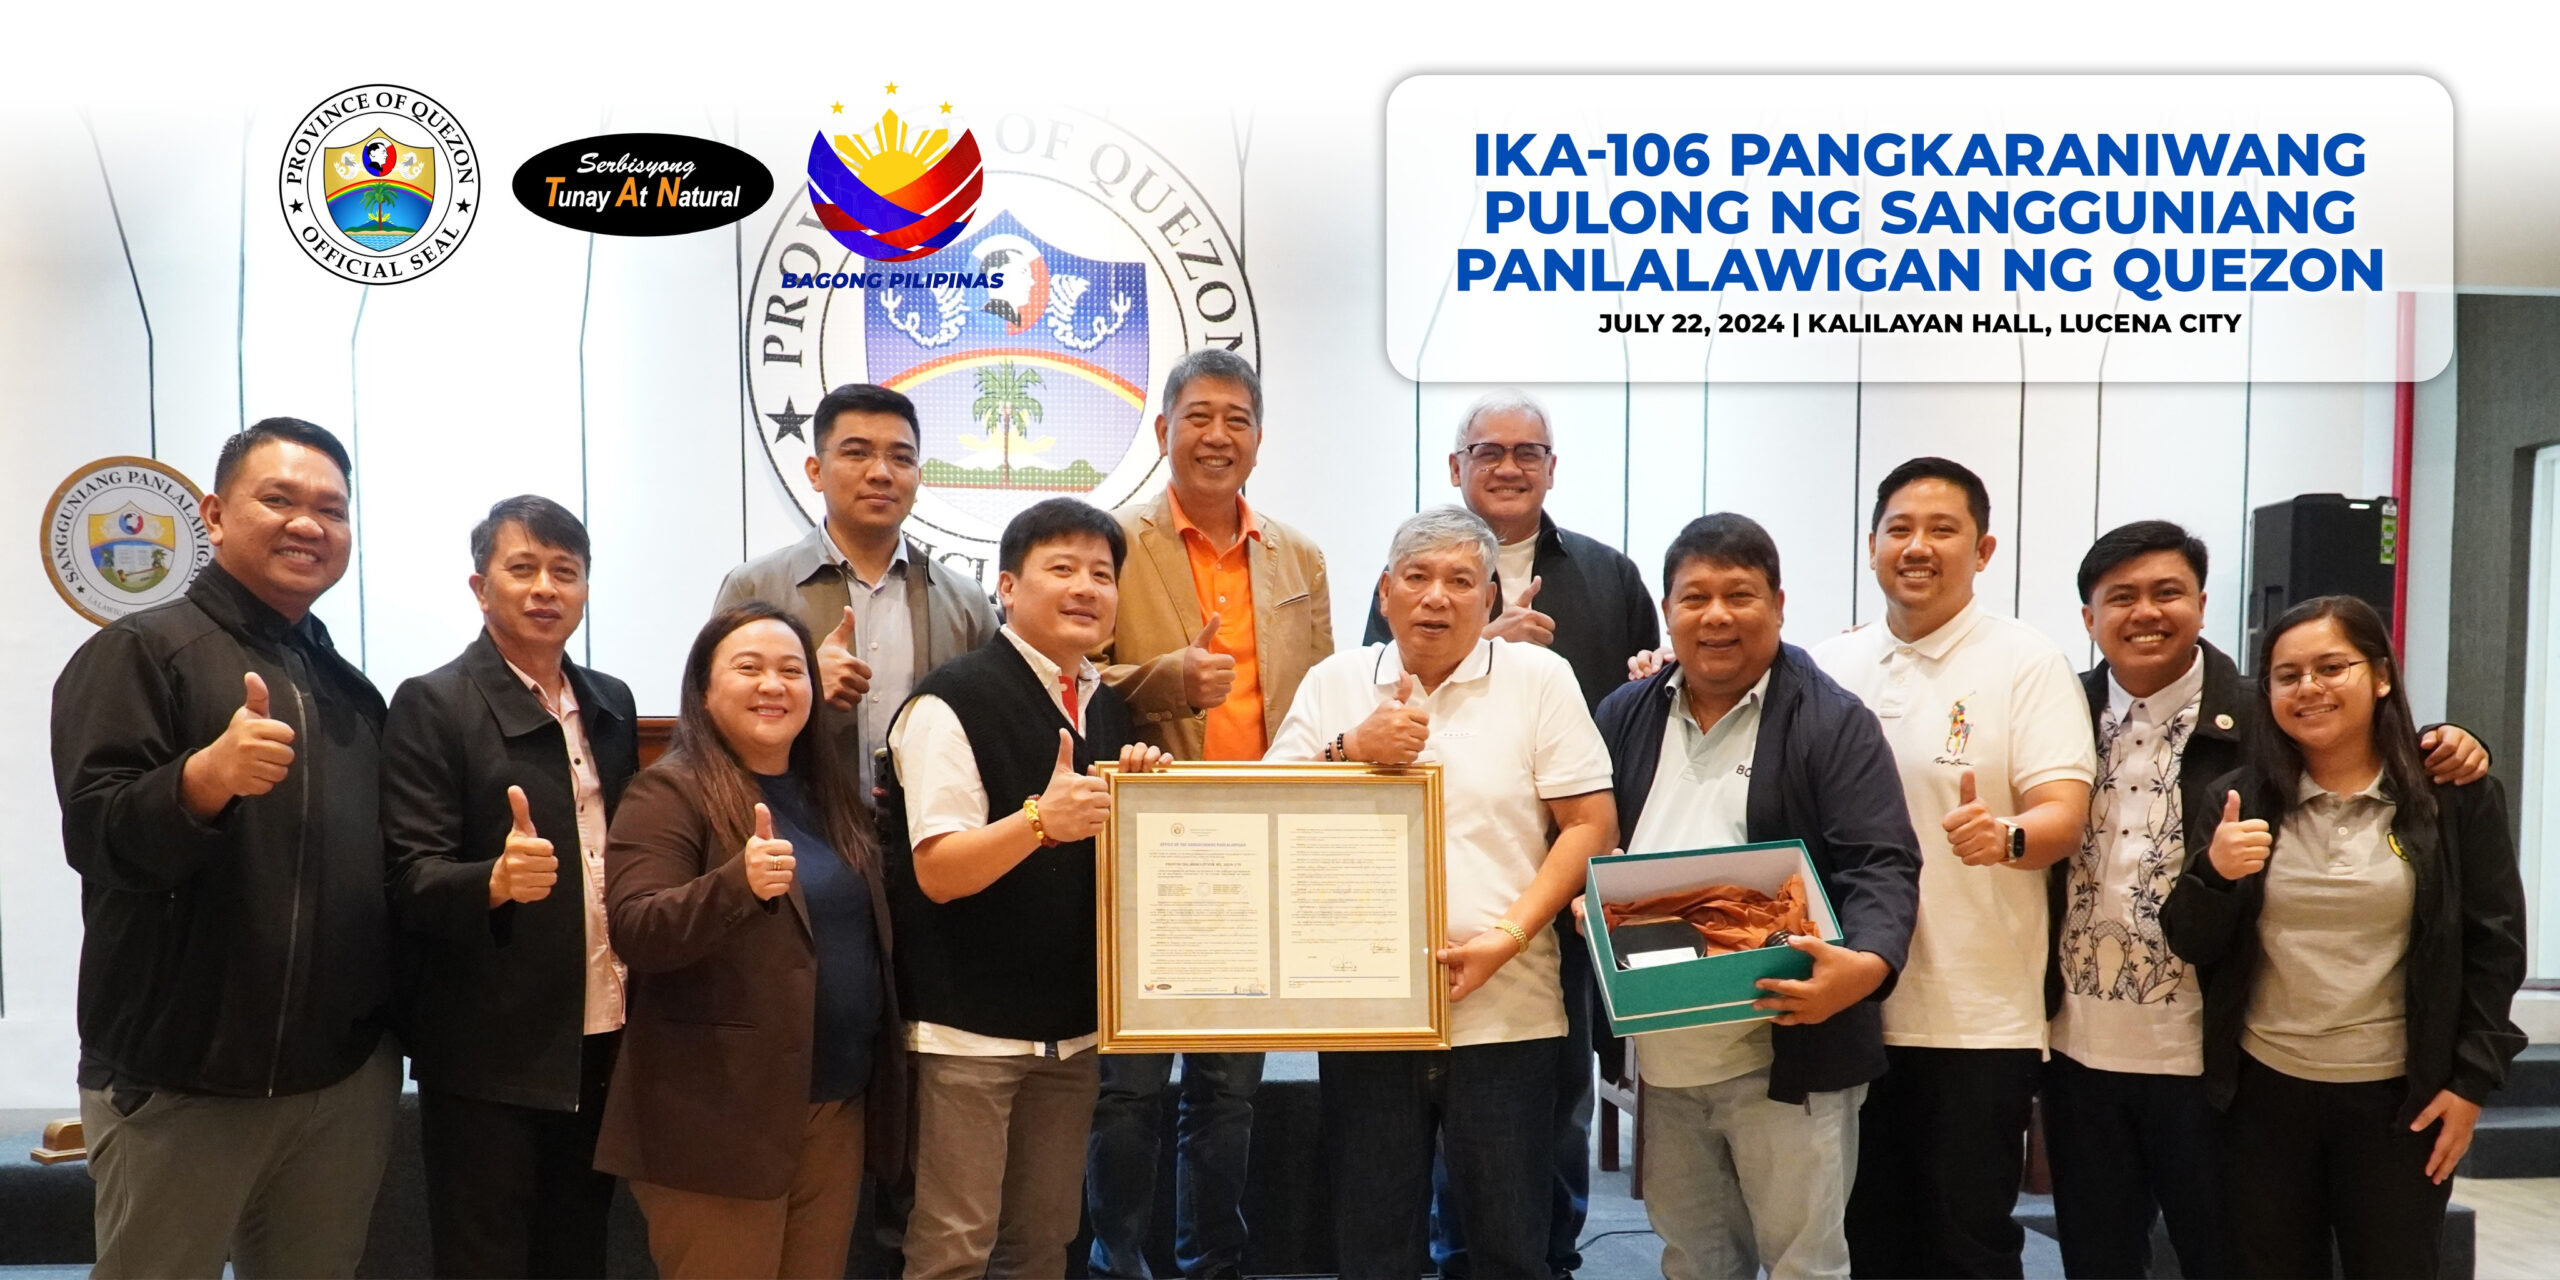 Ika-106 Pangkaraniwang Pulong ng Sangguniang Panlalawigan ng Quezon | July 22, 2024